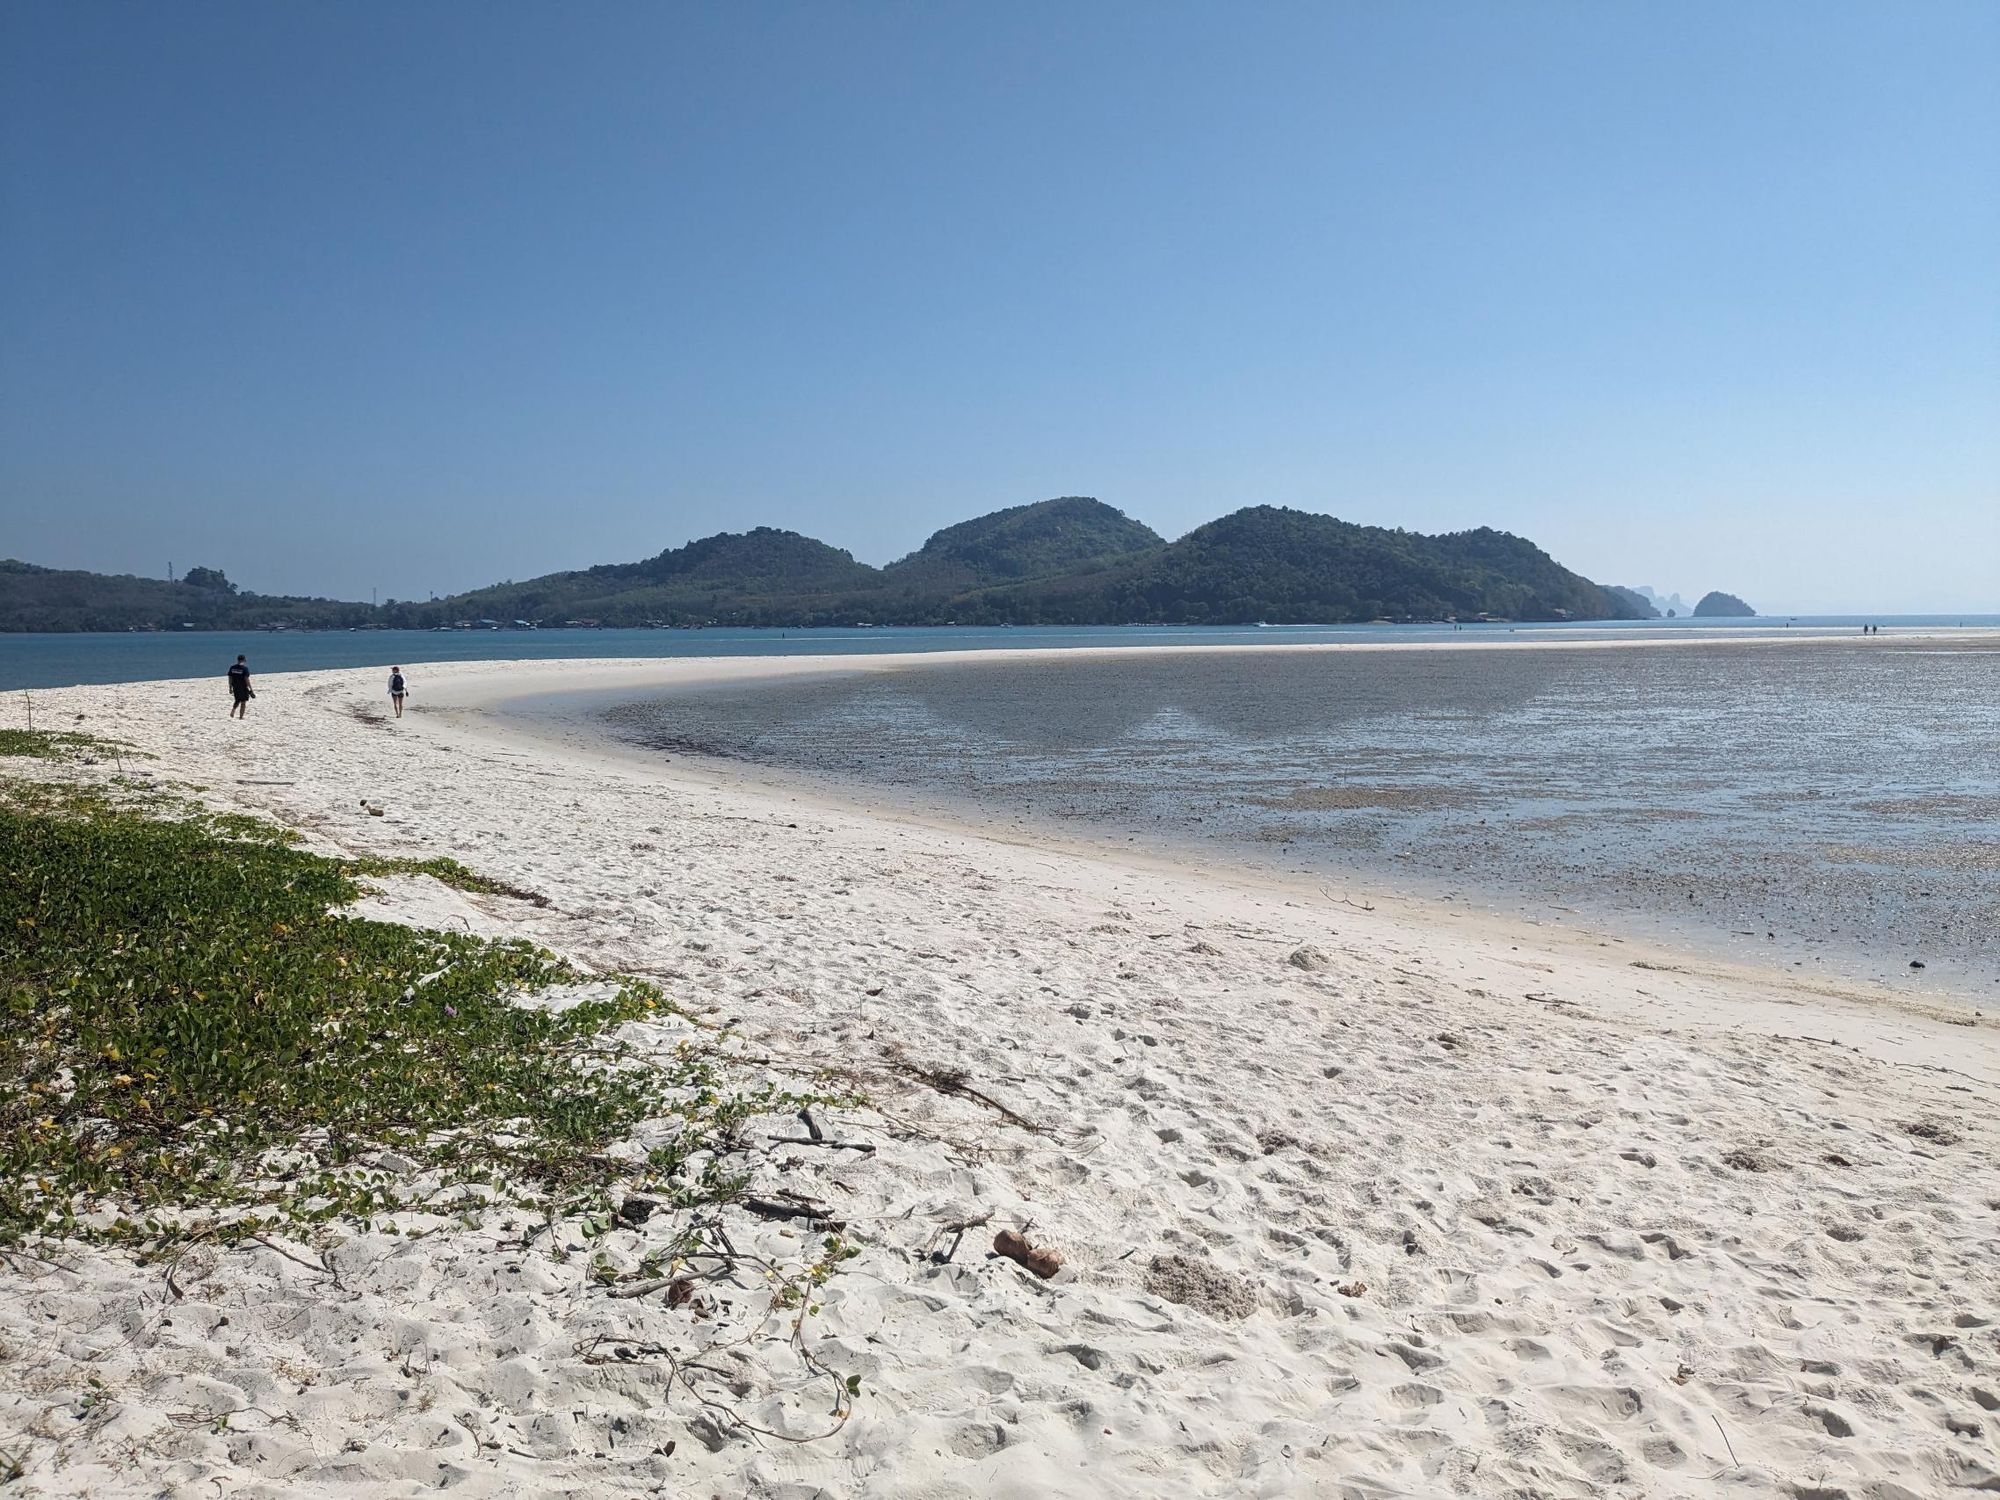 A beach on Koh Yao Yai, Thailand